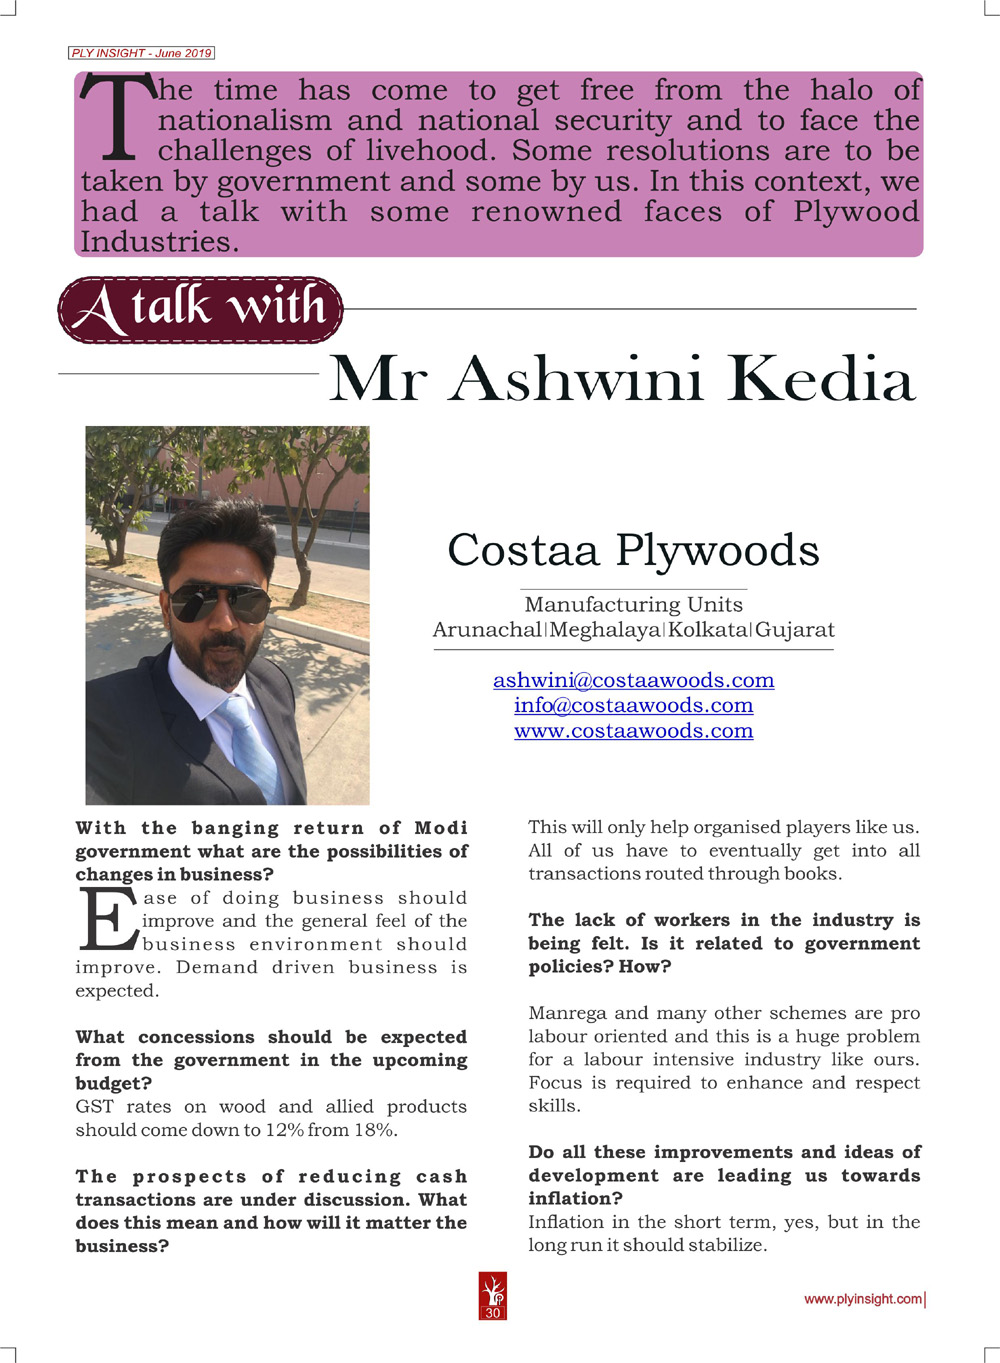 Mr. Ashwini Kedia